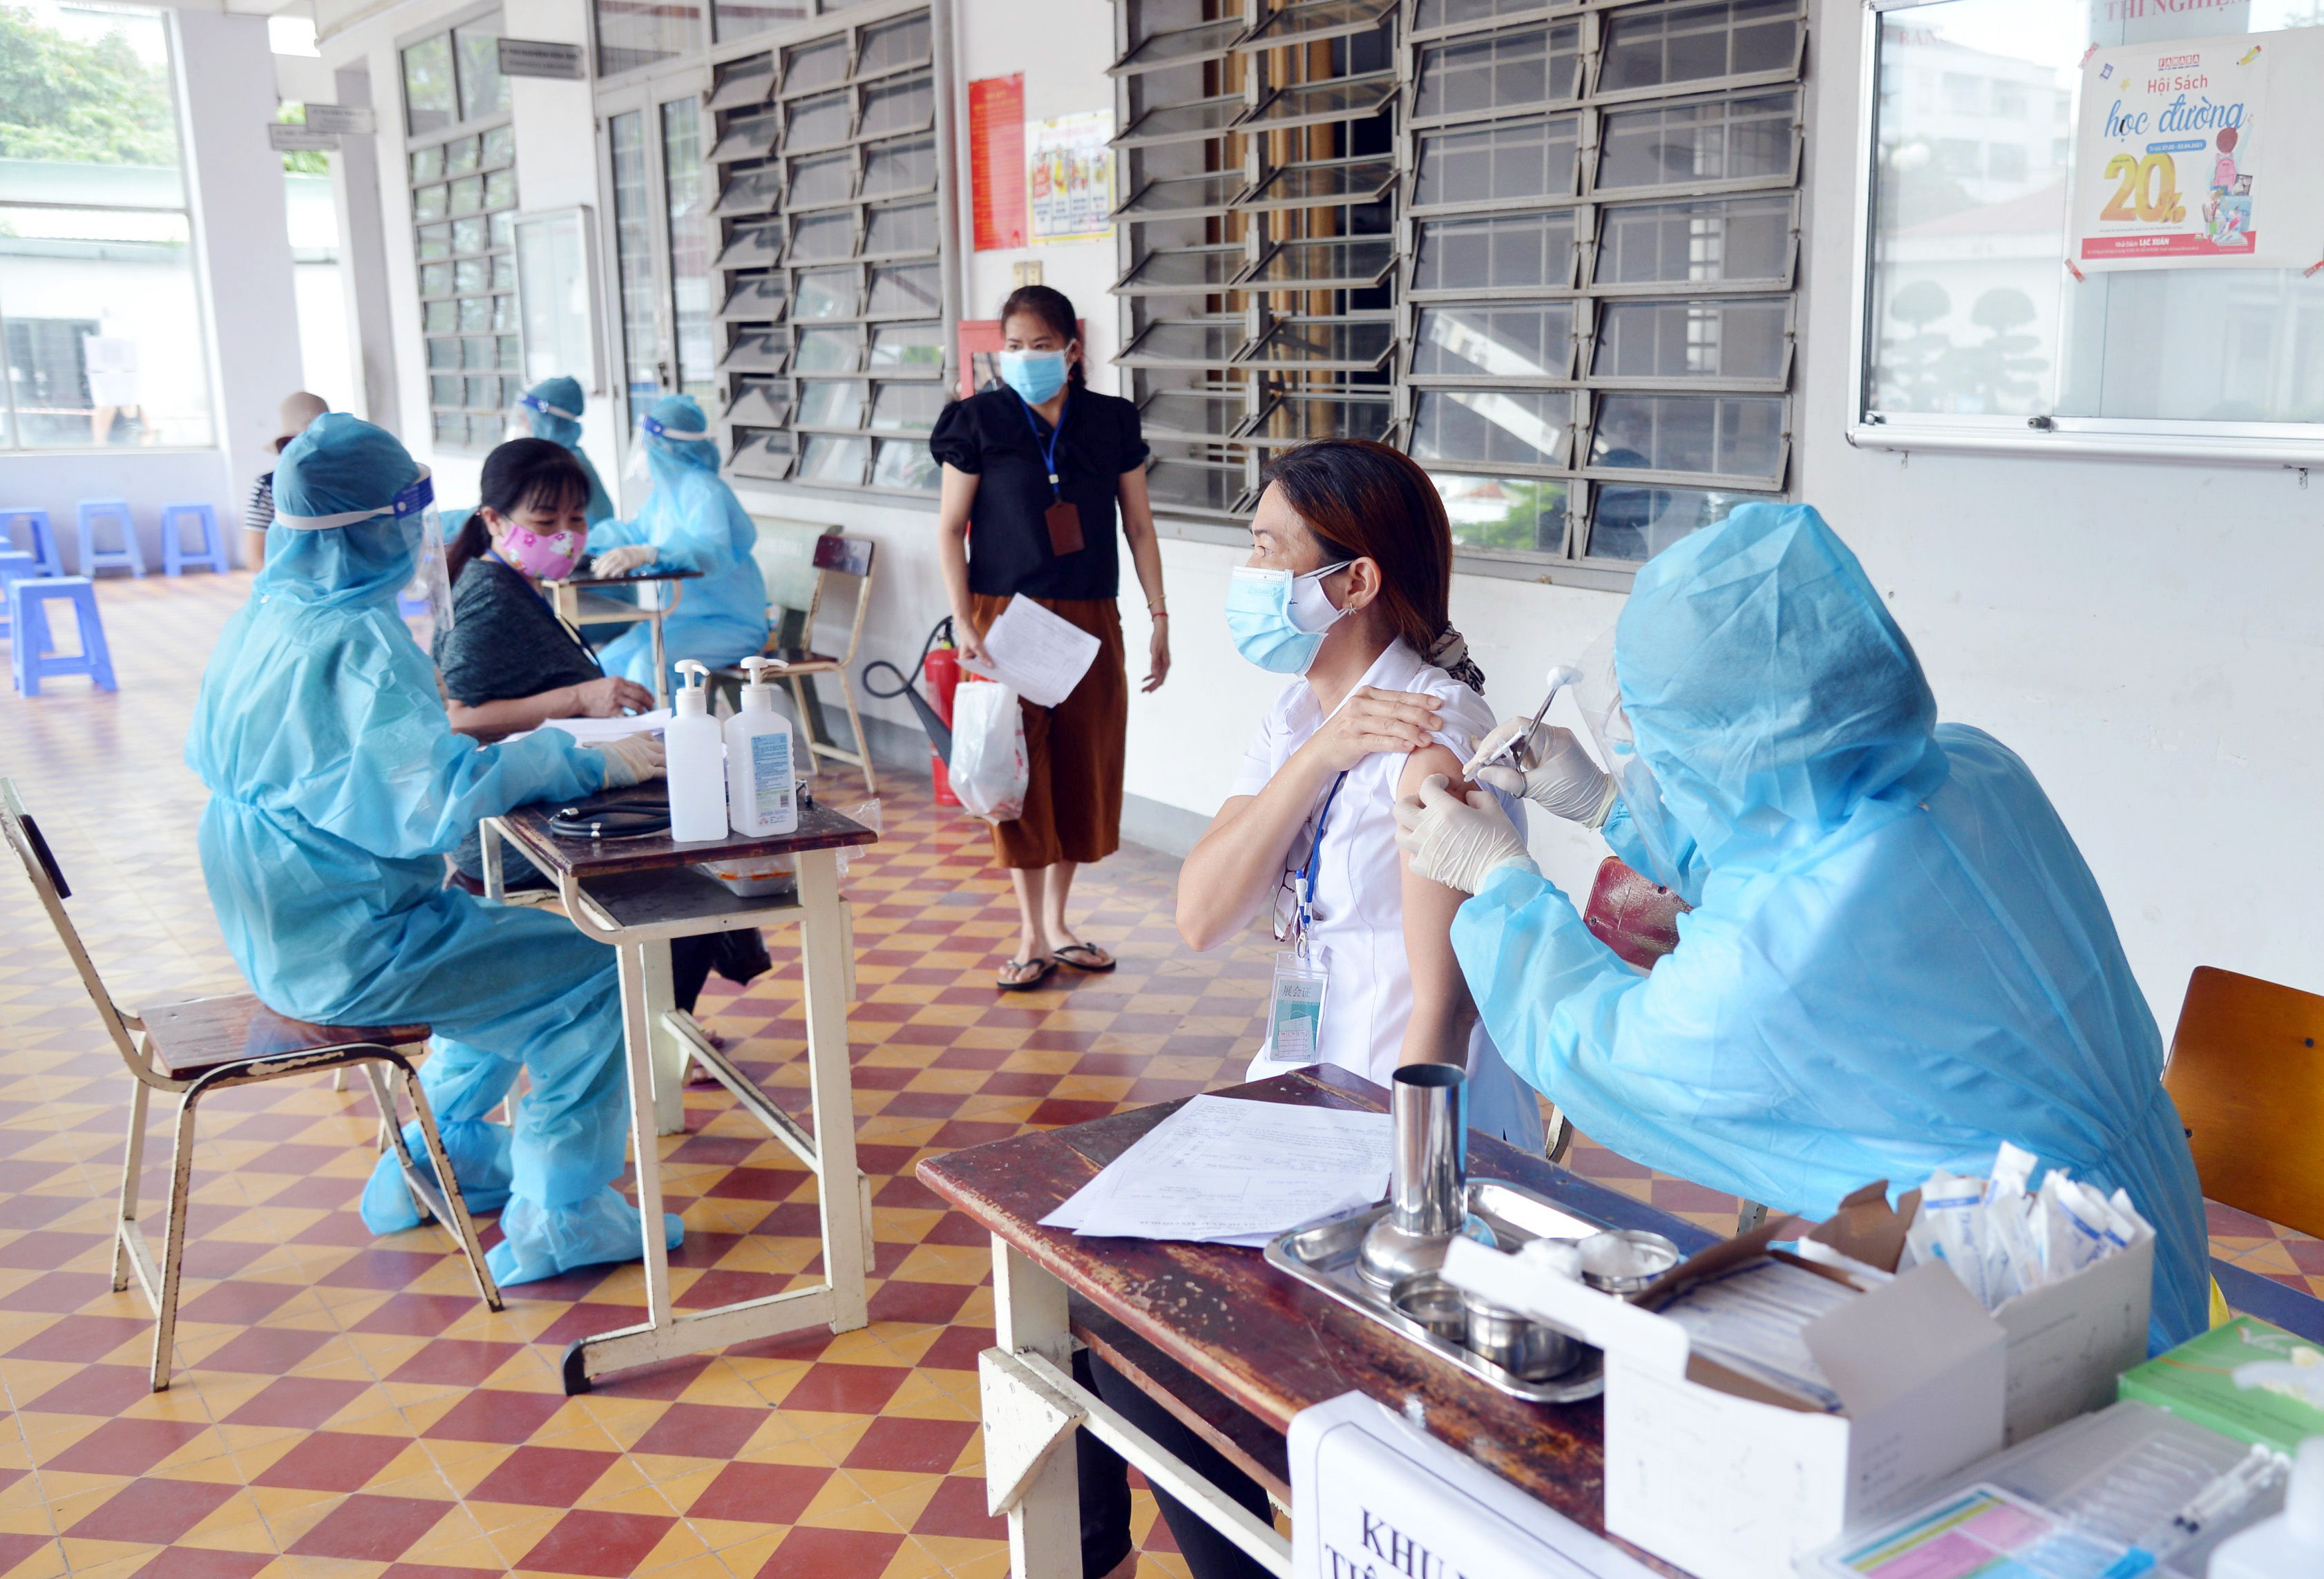 Ngày 31/7, ghi nhận tại một số điểm tiêm vắc xin COVID-19 ở TP.HCM đều tuân thủ nghiêm quy định phòng dịch. Tại điểm tiêm trường THPT Trường Chinh (phường Tân Hưng Thuận, quận 12), người dân xếp hàng trật tự, chờ đến lượt tiêm.